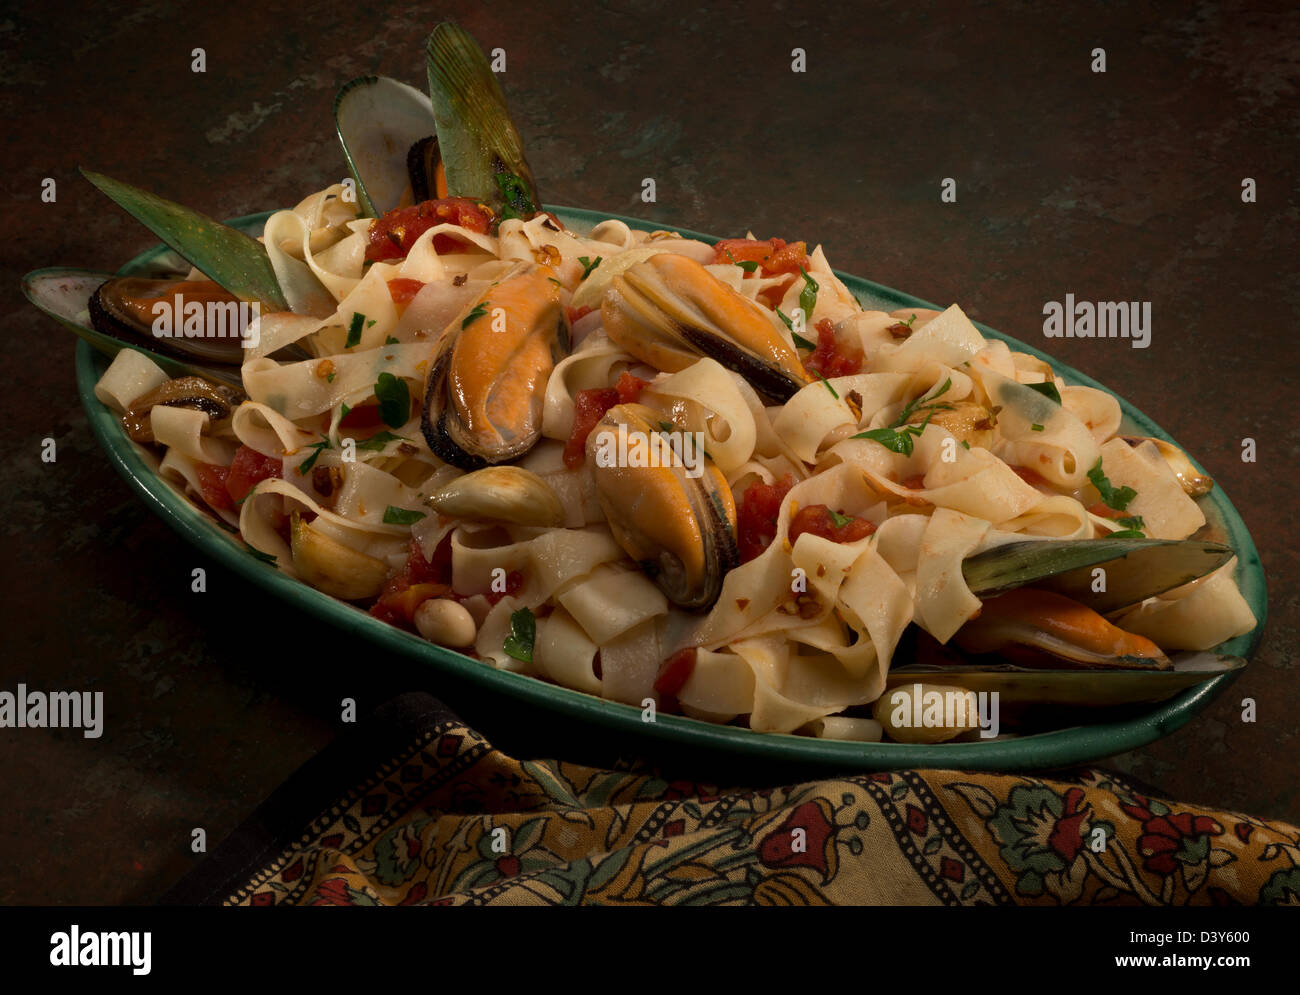 Eine grüne Muschel-Platte mit Tagliatelle Pasta, Cannelini Bohnen, Knoblauch und italienische Petersilie. Stockfoto